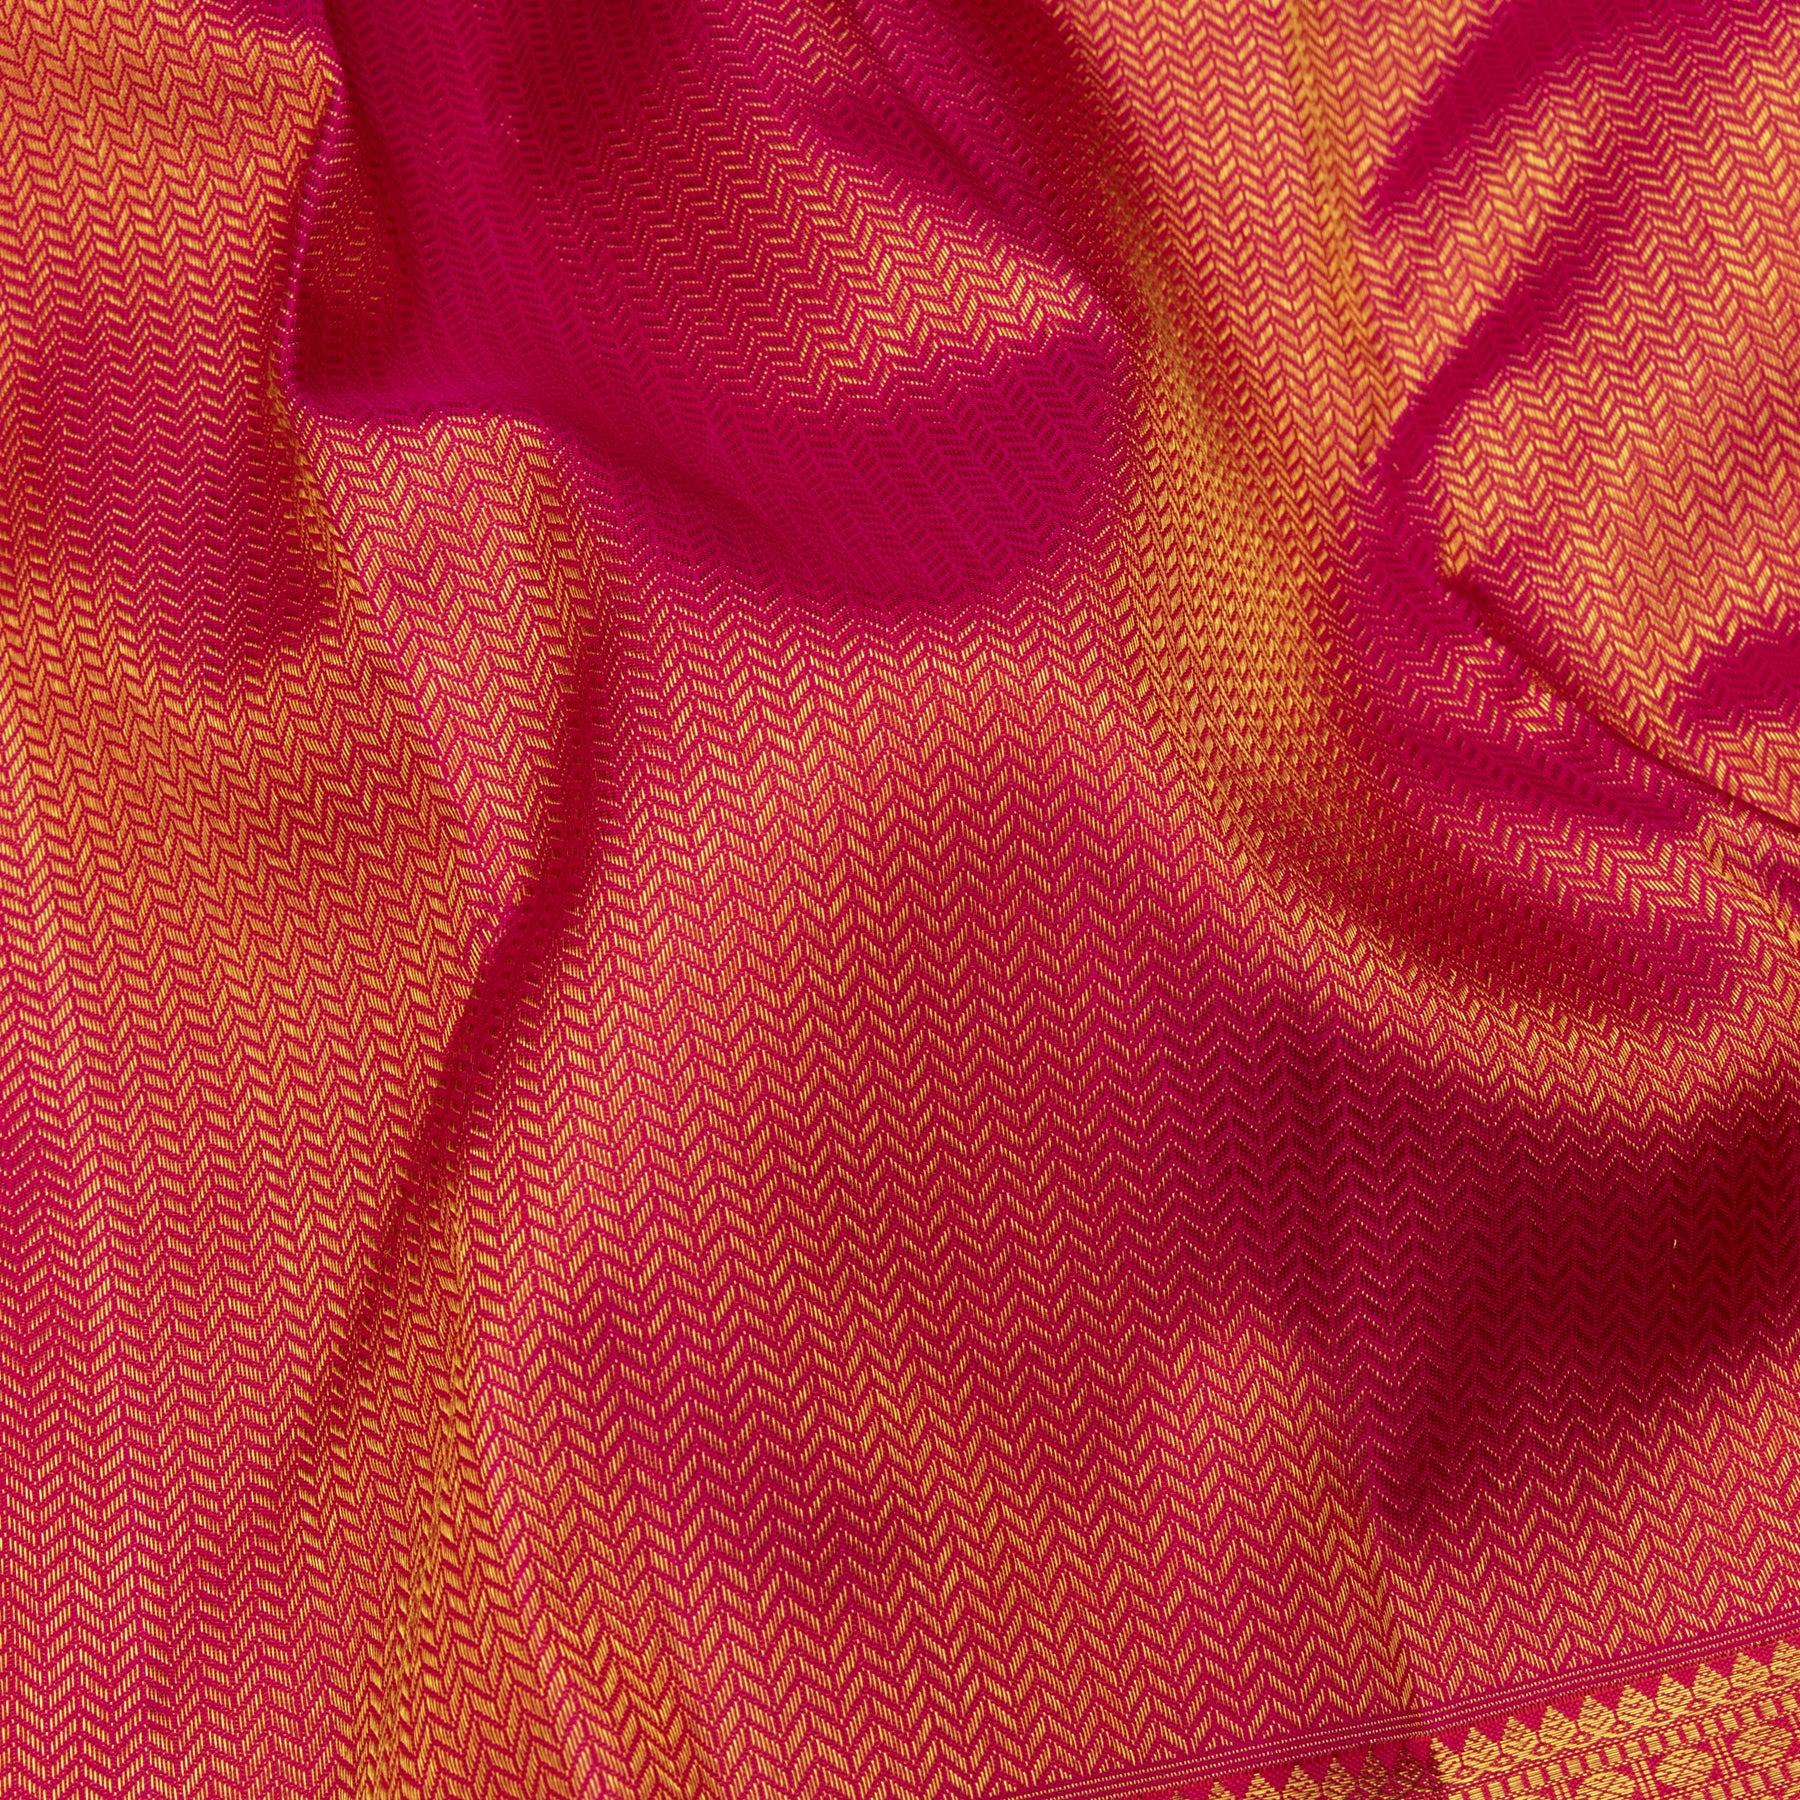 Kanakavalli Kanjivaram Silk Sari 23-110-HS001-13489 - Fabric View